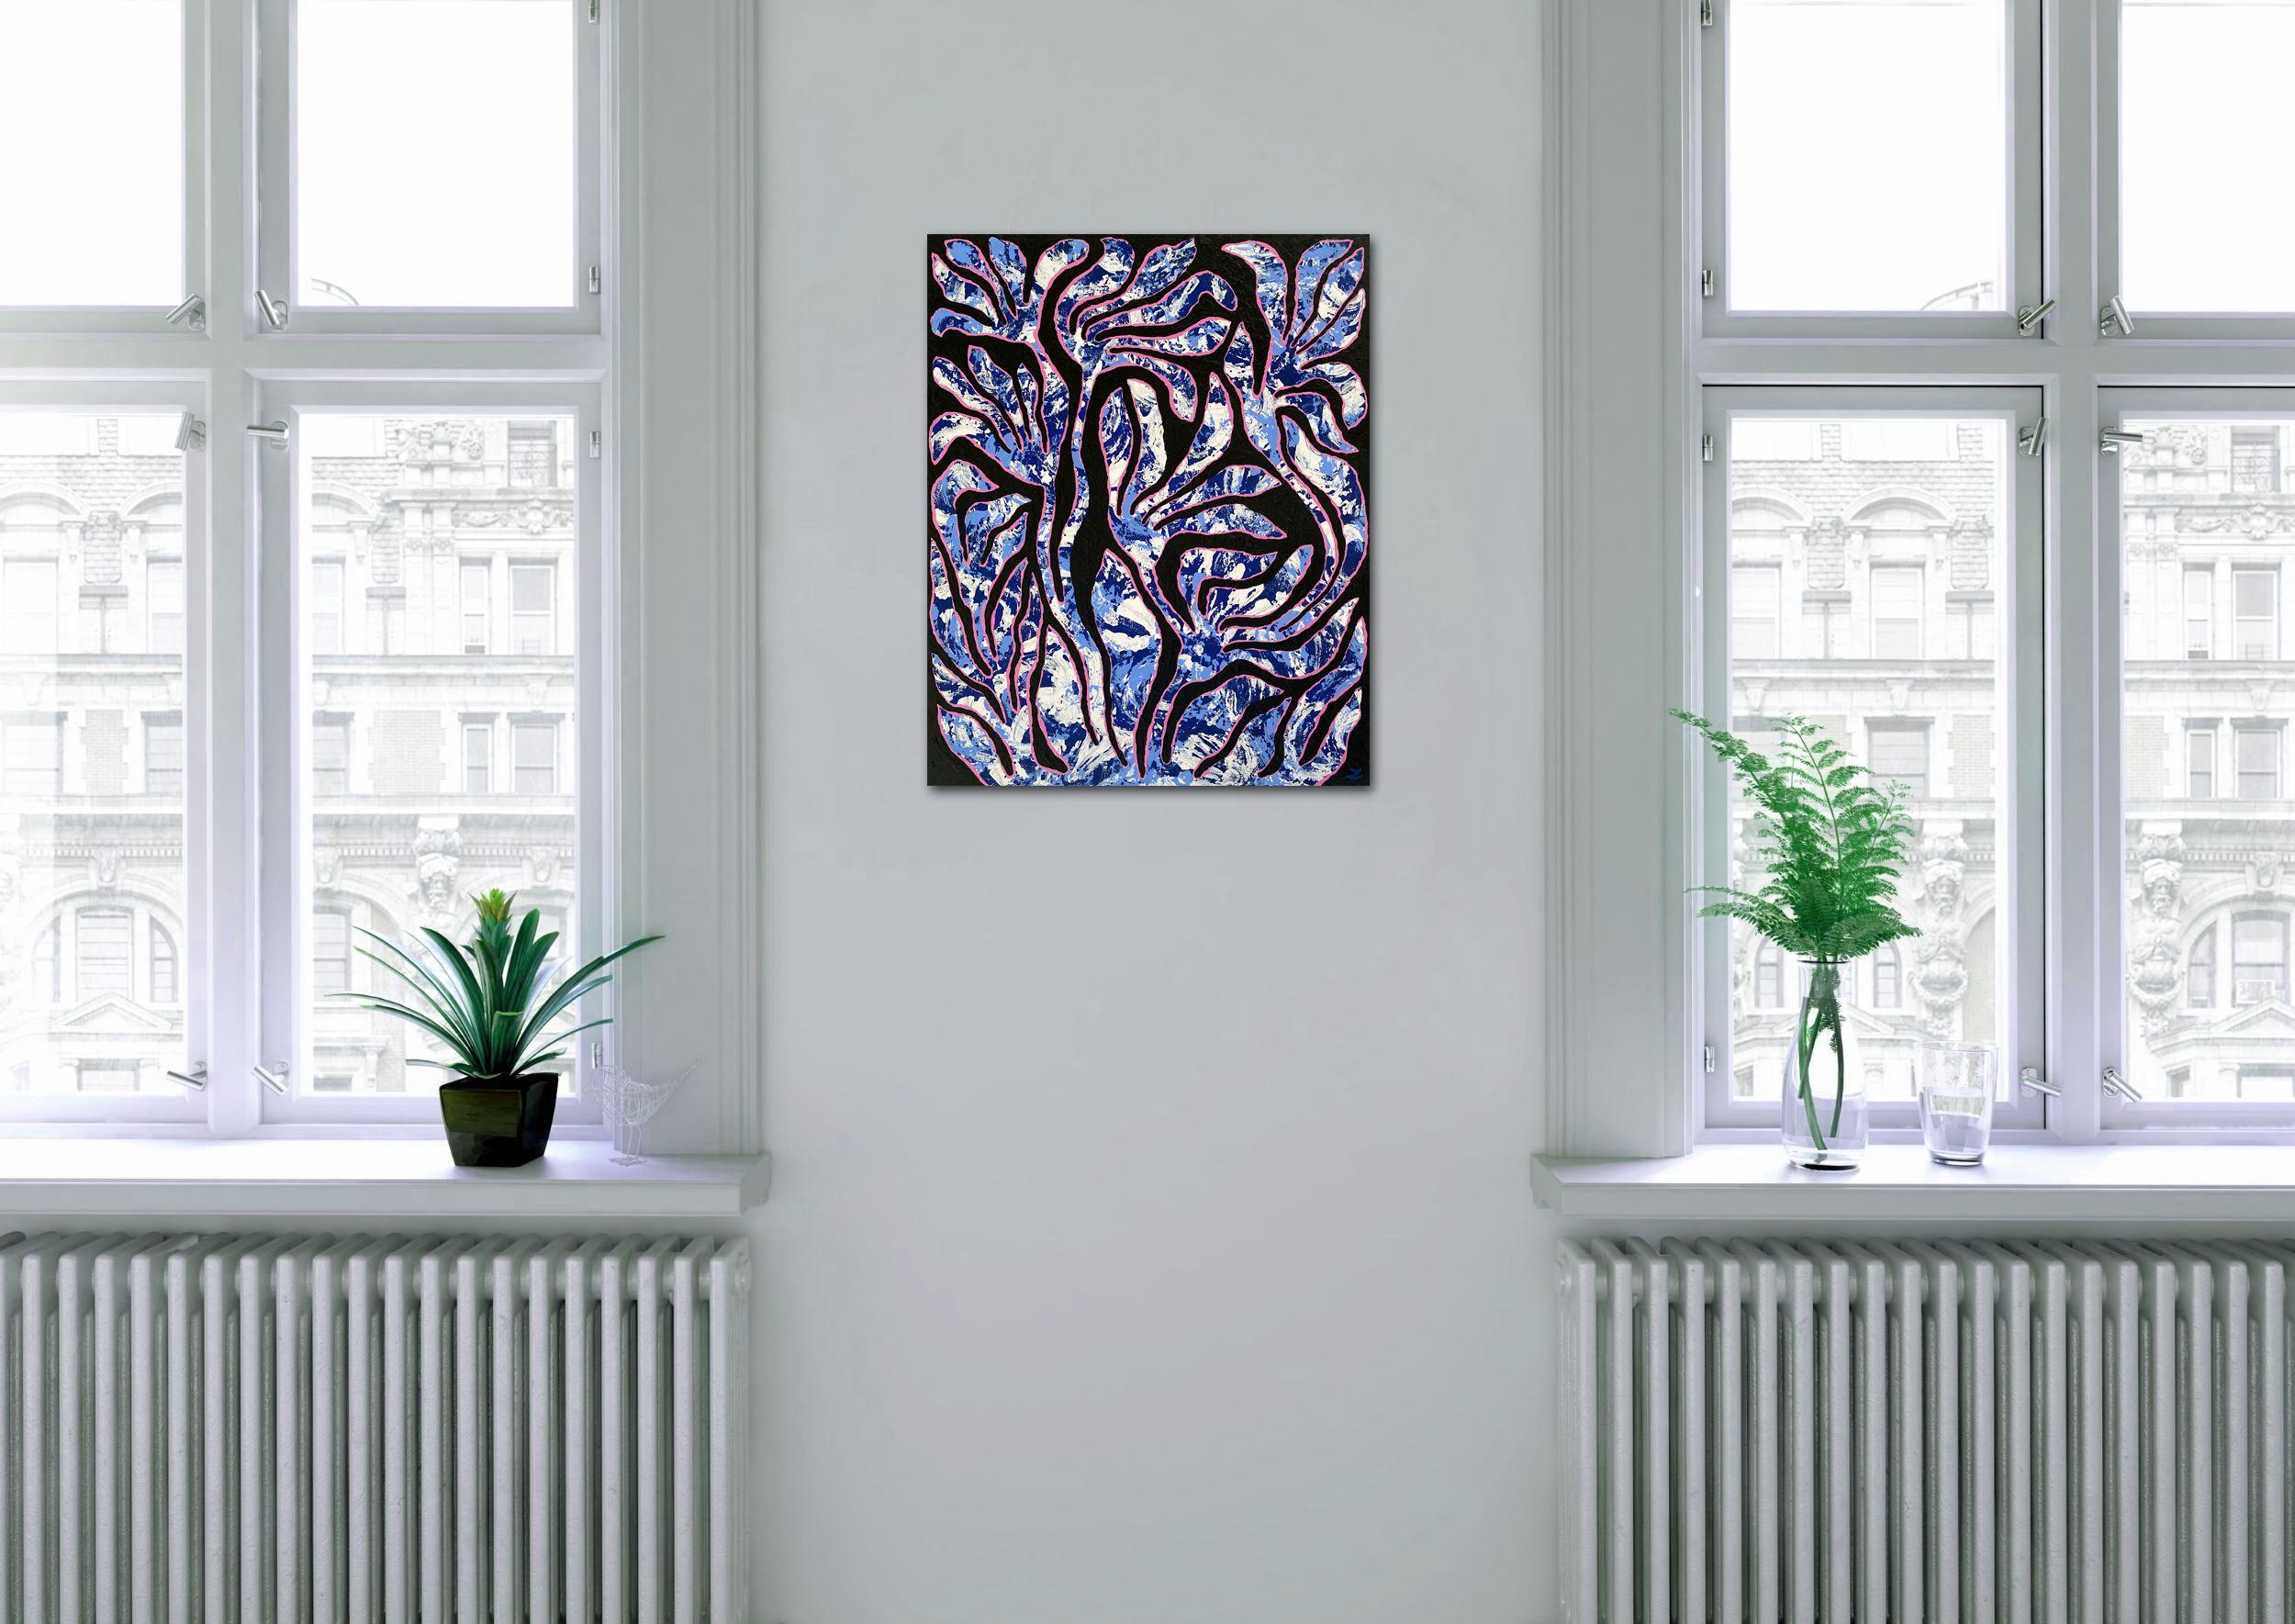 Abstrakte Blumen in Blau, Rosa, Weiß und Schwarz. Original-Acrylgemälde auf Keilrahmen. Galerie-Profil. Sehr reichhaltige Textur. Größe 16 x 20 x 1,5